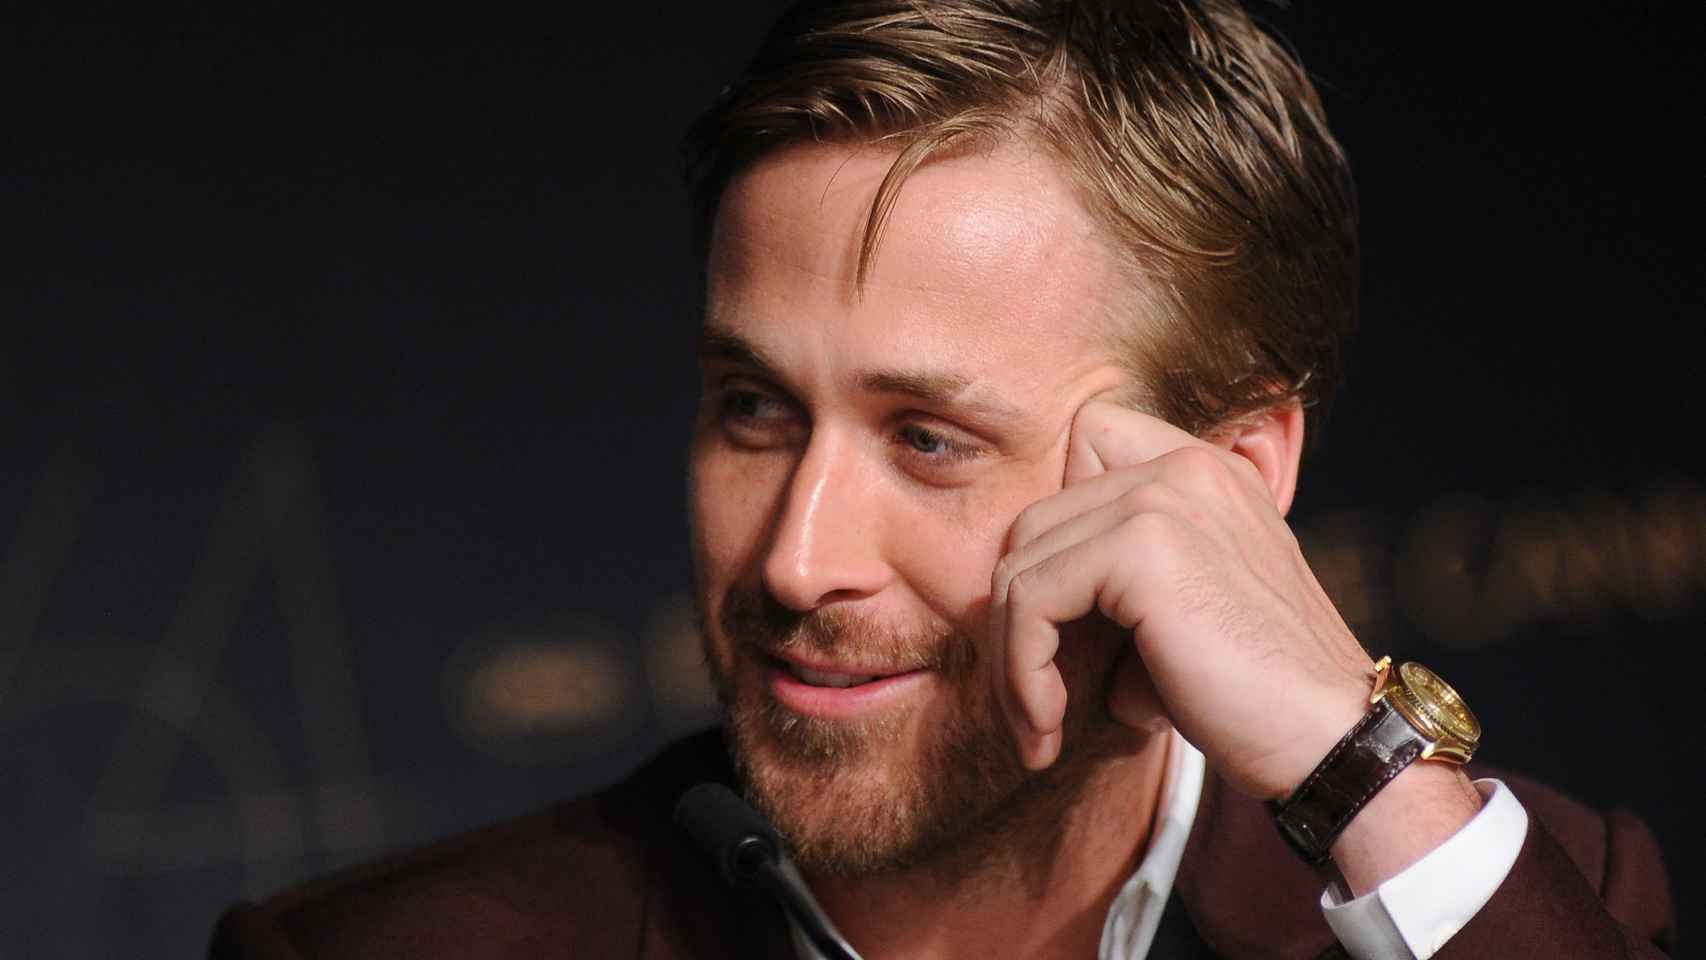 El actor Ryan Gosling ha convertido el reloj en su mejor aliado de estilo. | Foto: Getty Images.